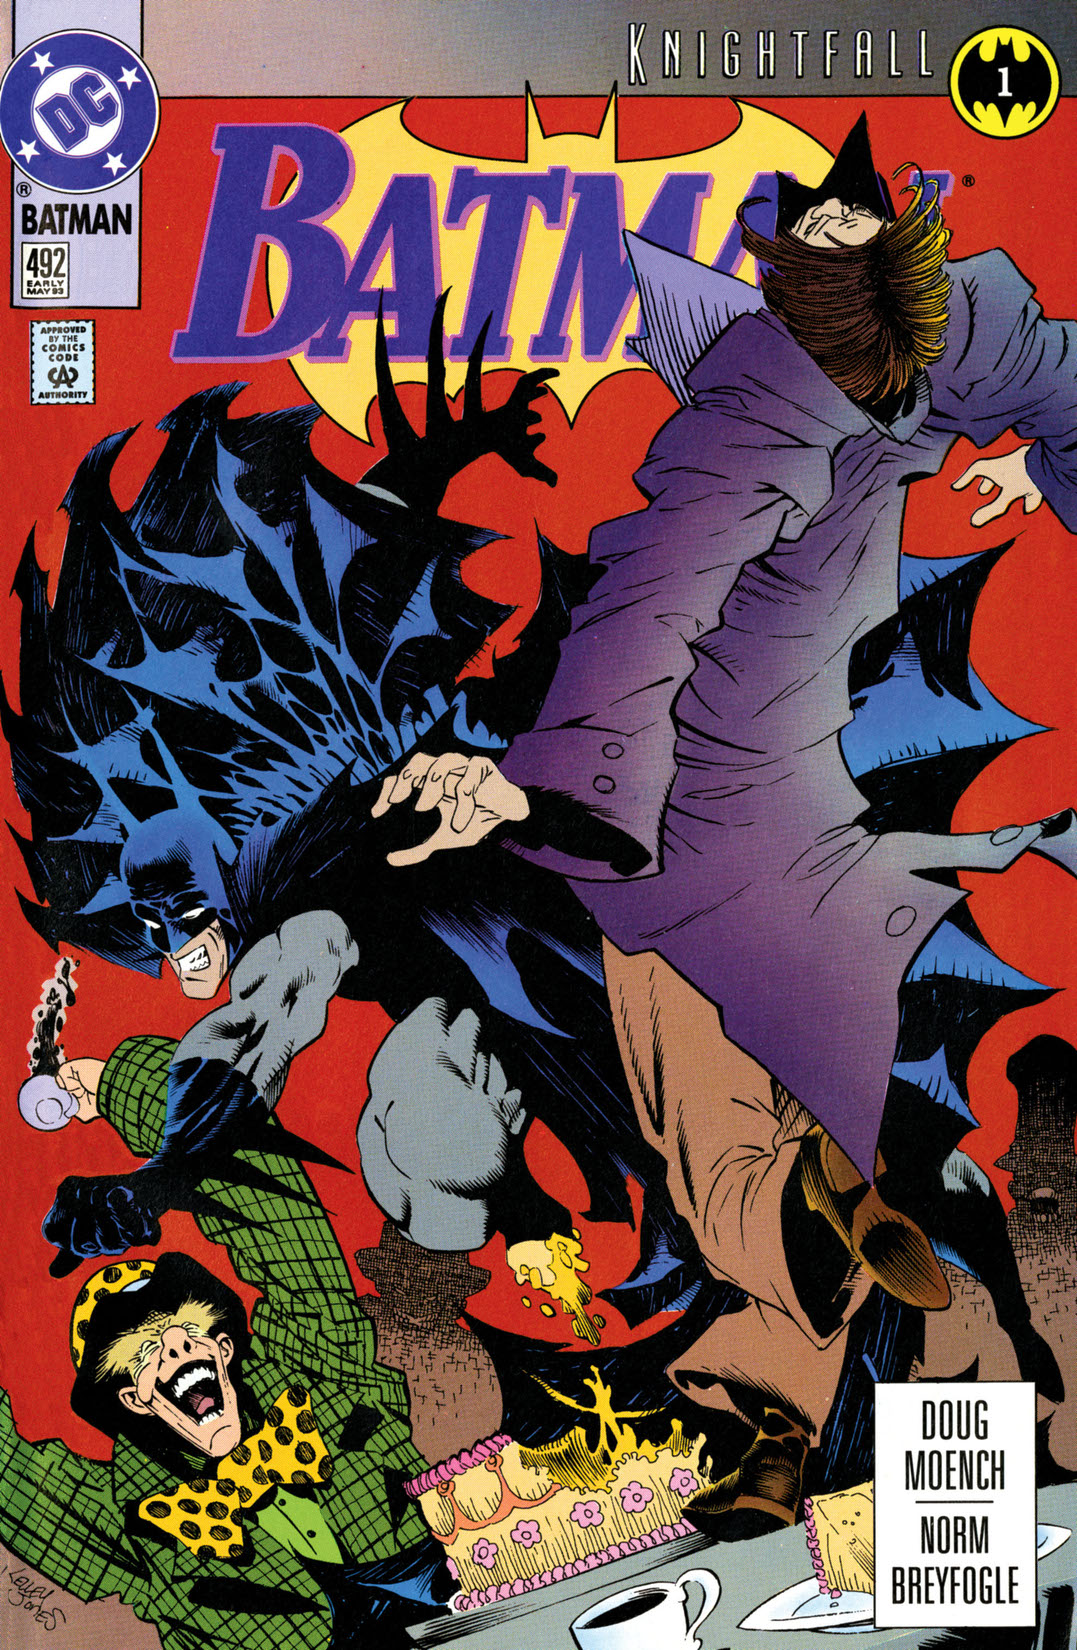 Batman (1940-) #492 preview images